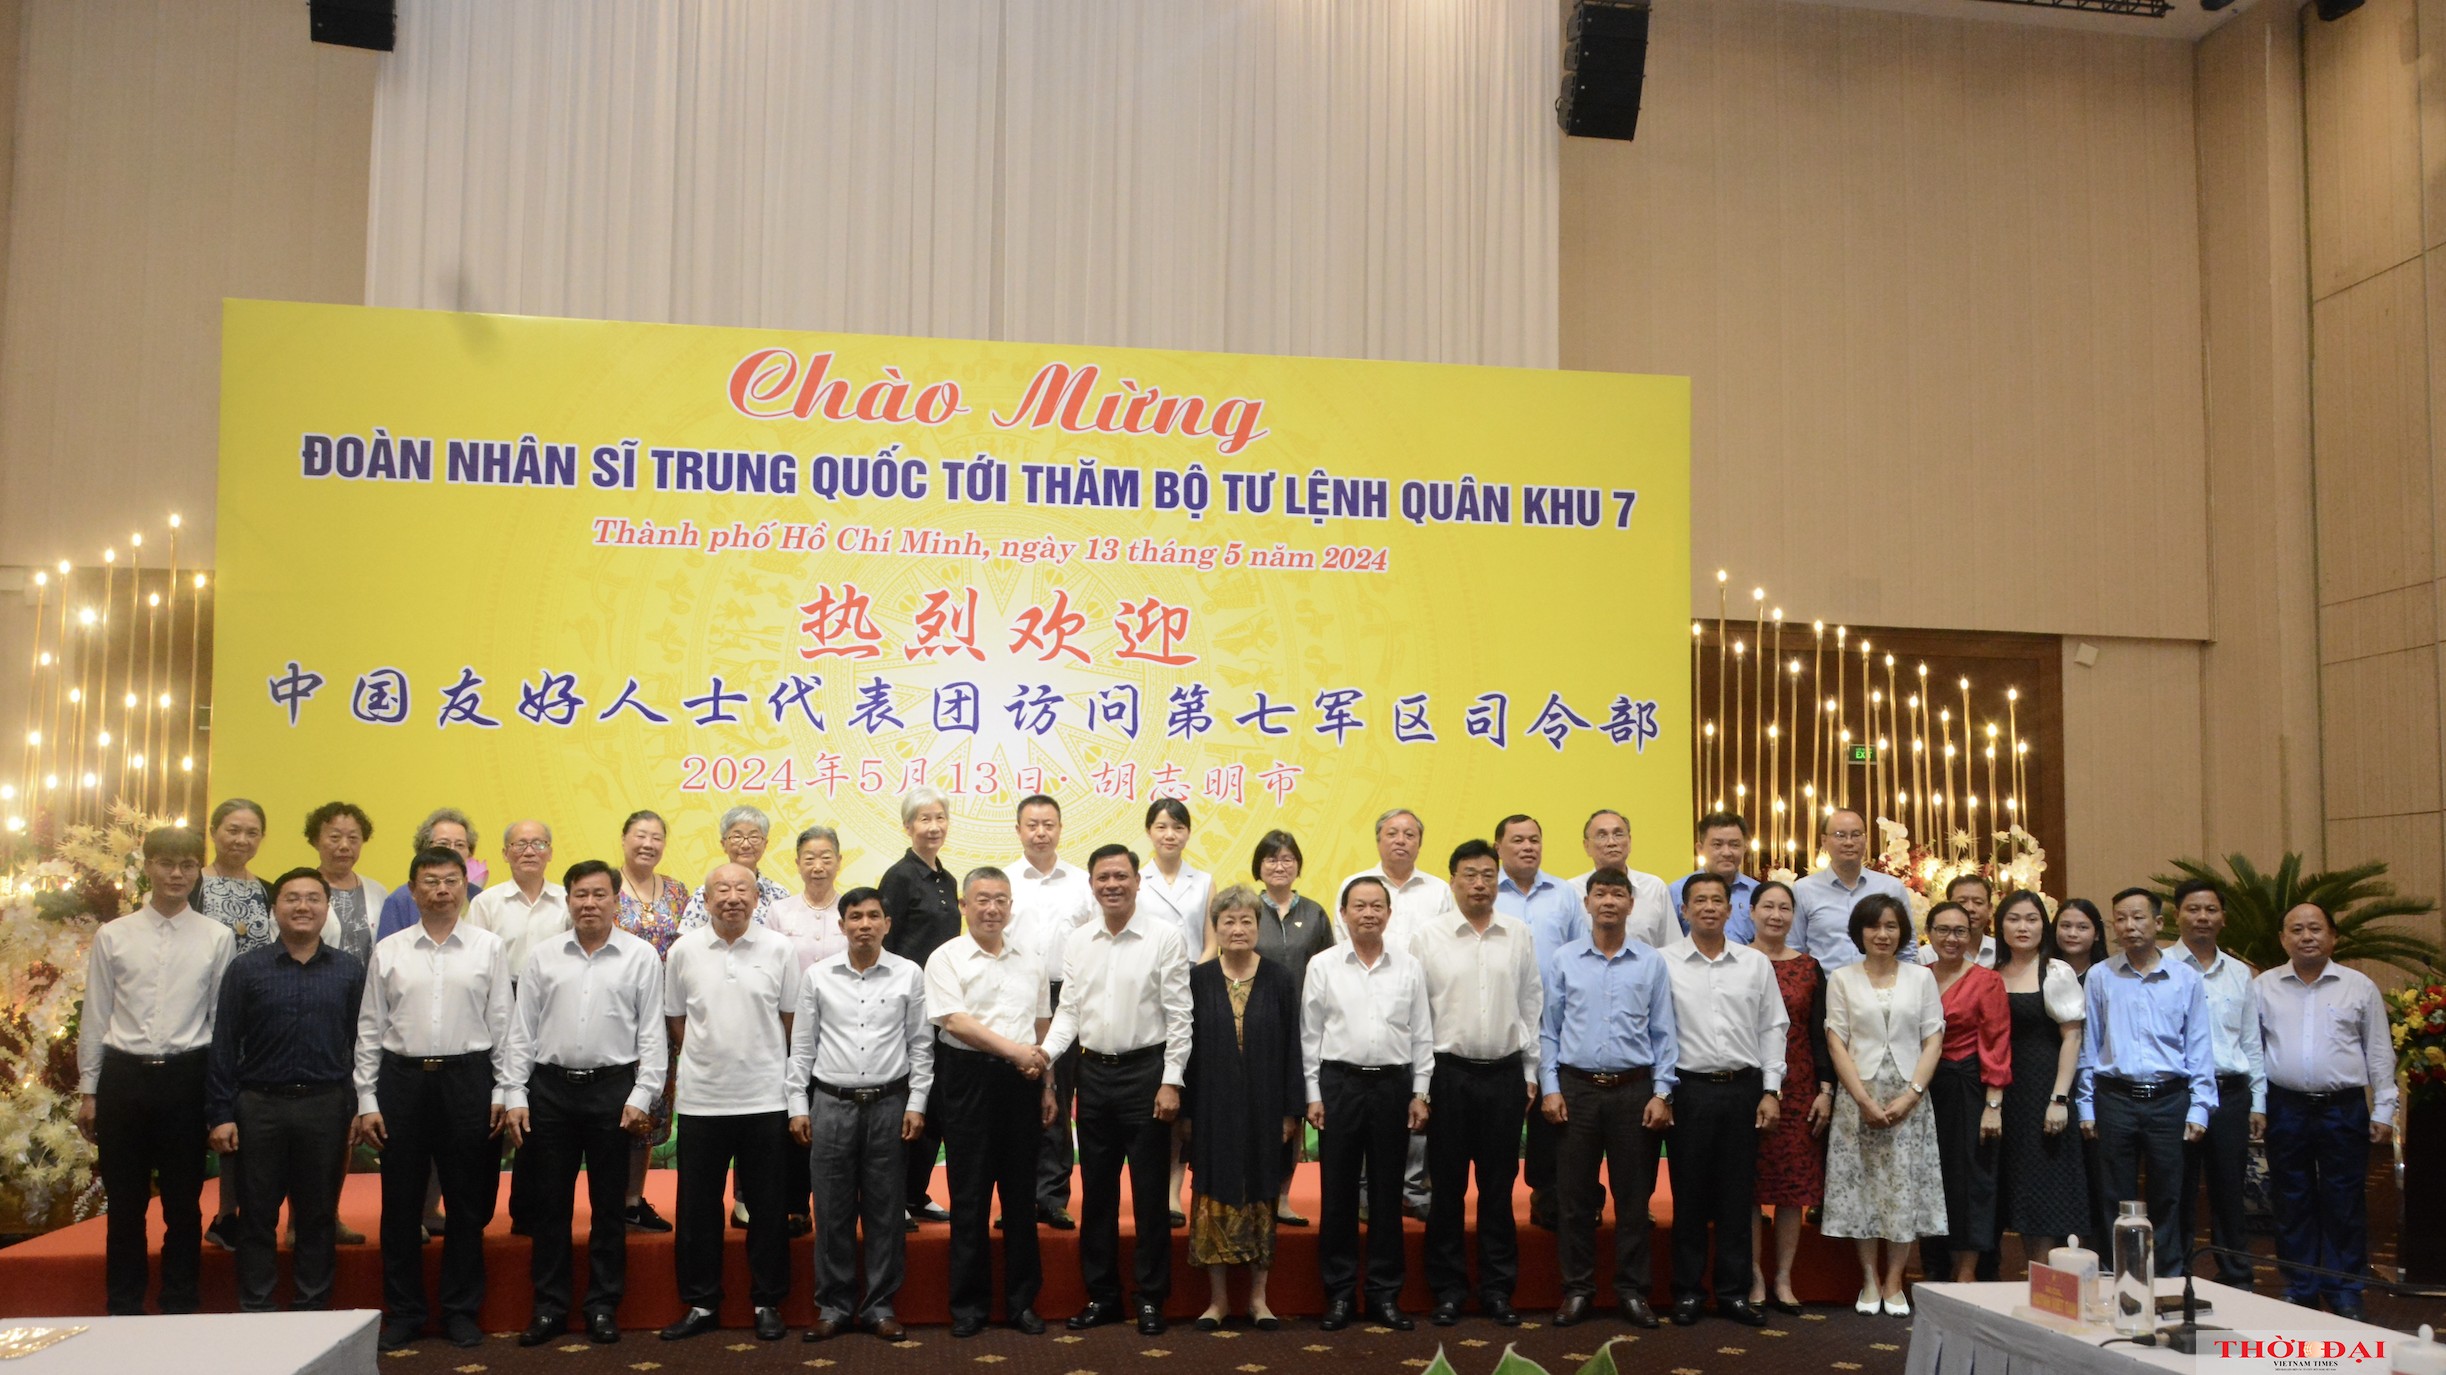 Đoàn nhân sỹ hữu nghị Trung Quốc thăm Việt Nam từ ngày 6/5 đến ngày 13/5